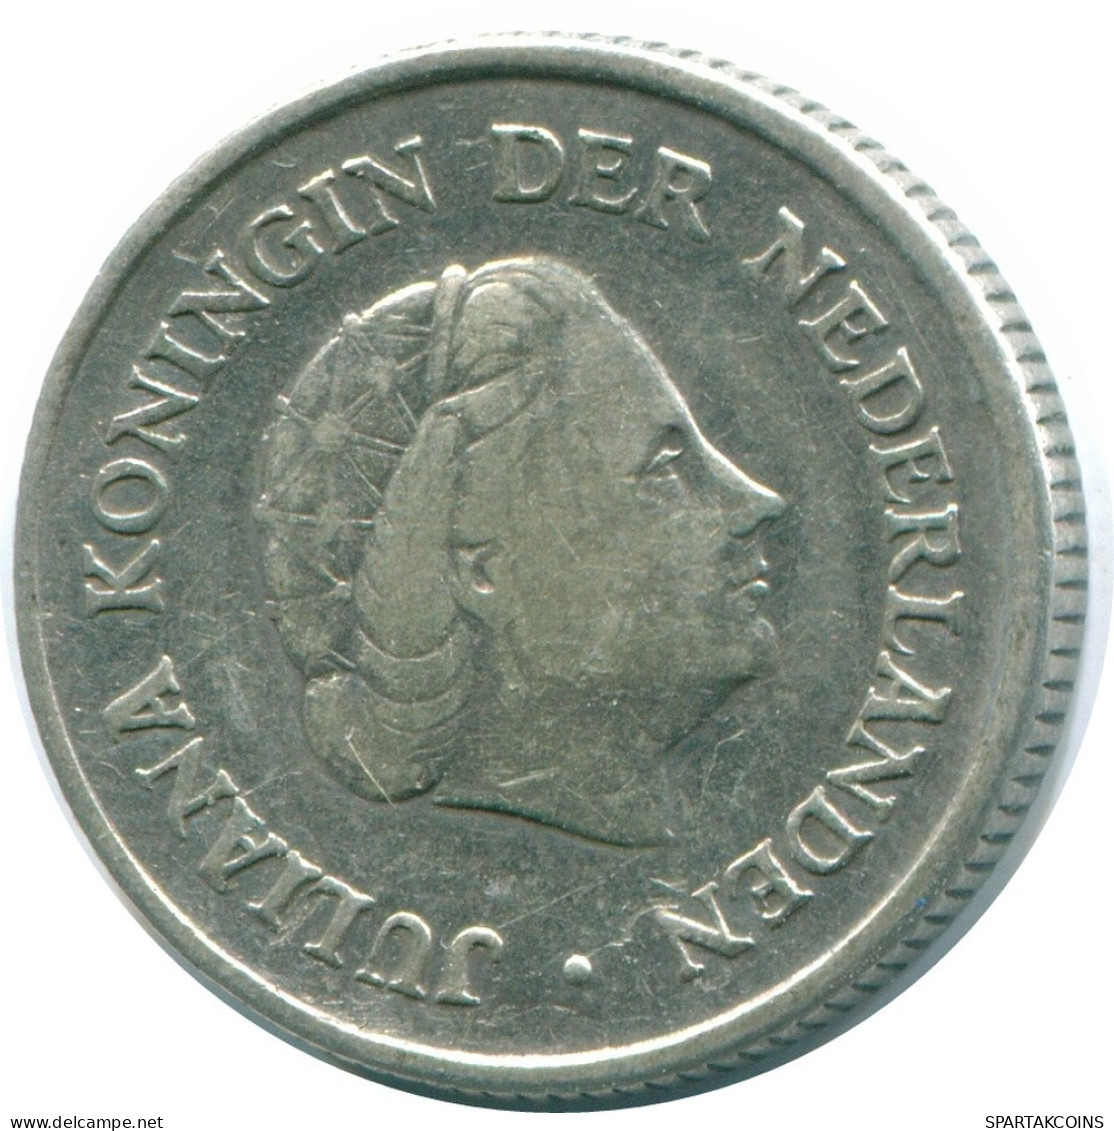 1/4 GULDEN 1962 NIEDERLÄNDISCHE ANTILLEN SILBER Koloniale Münze #NL11177.4.D.A - Antilles Néerlandaises